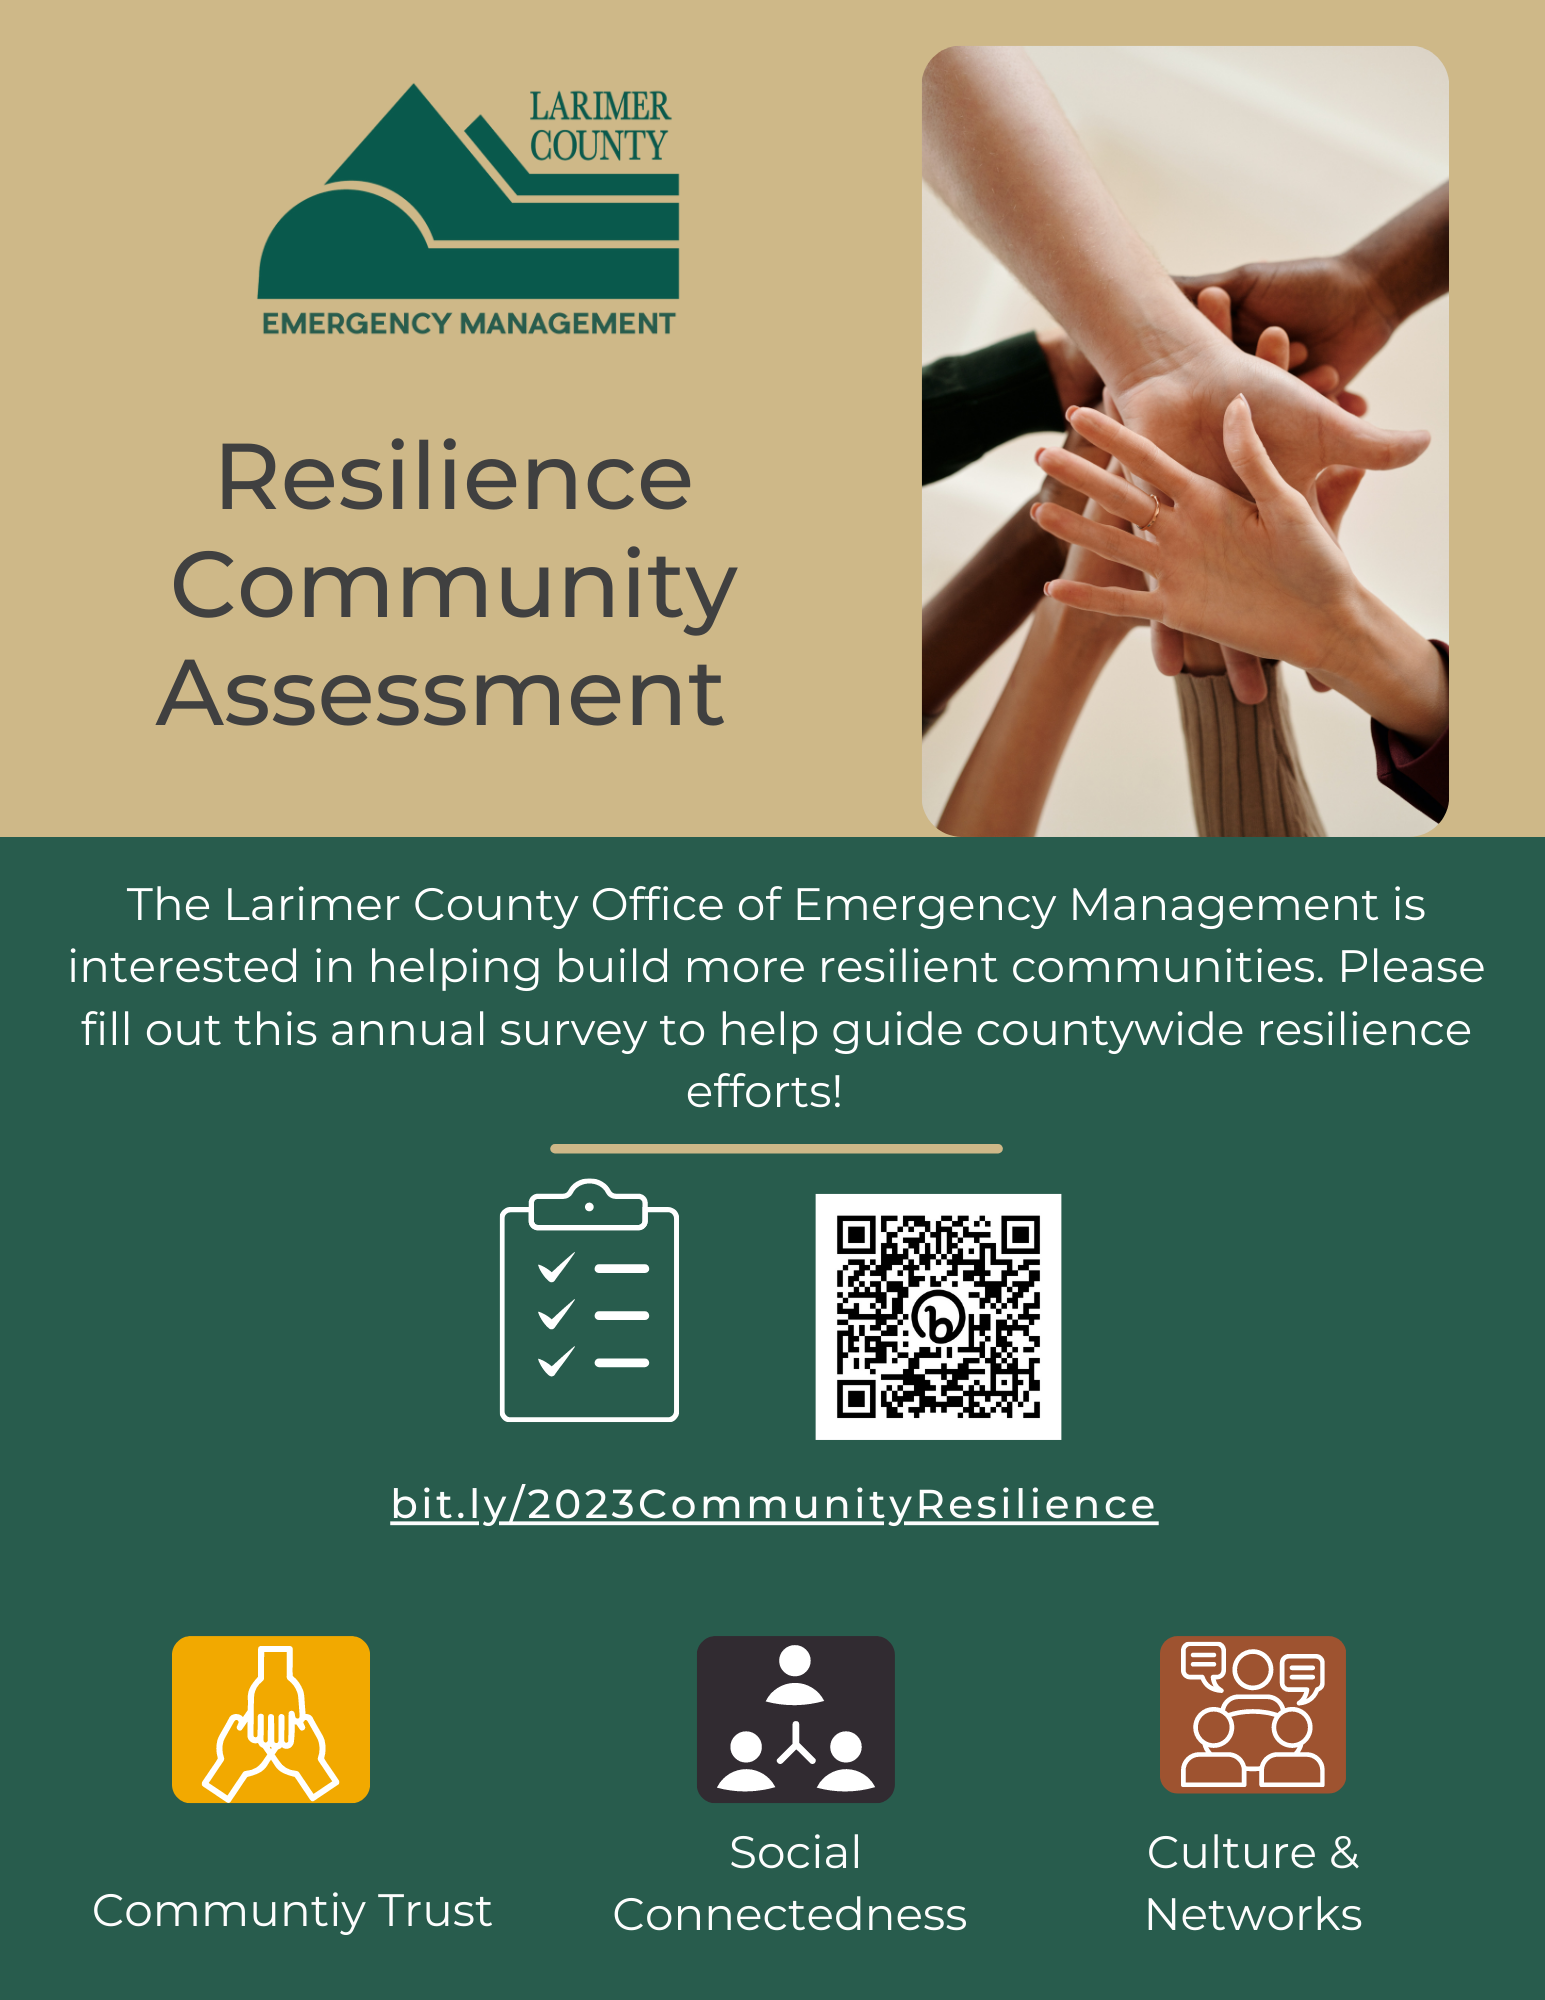 Изображение 1: Оценка устойчивости сообщества Управления по чрезвычайным ситуациям округа Лаример